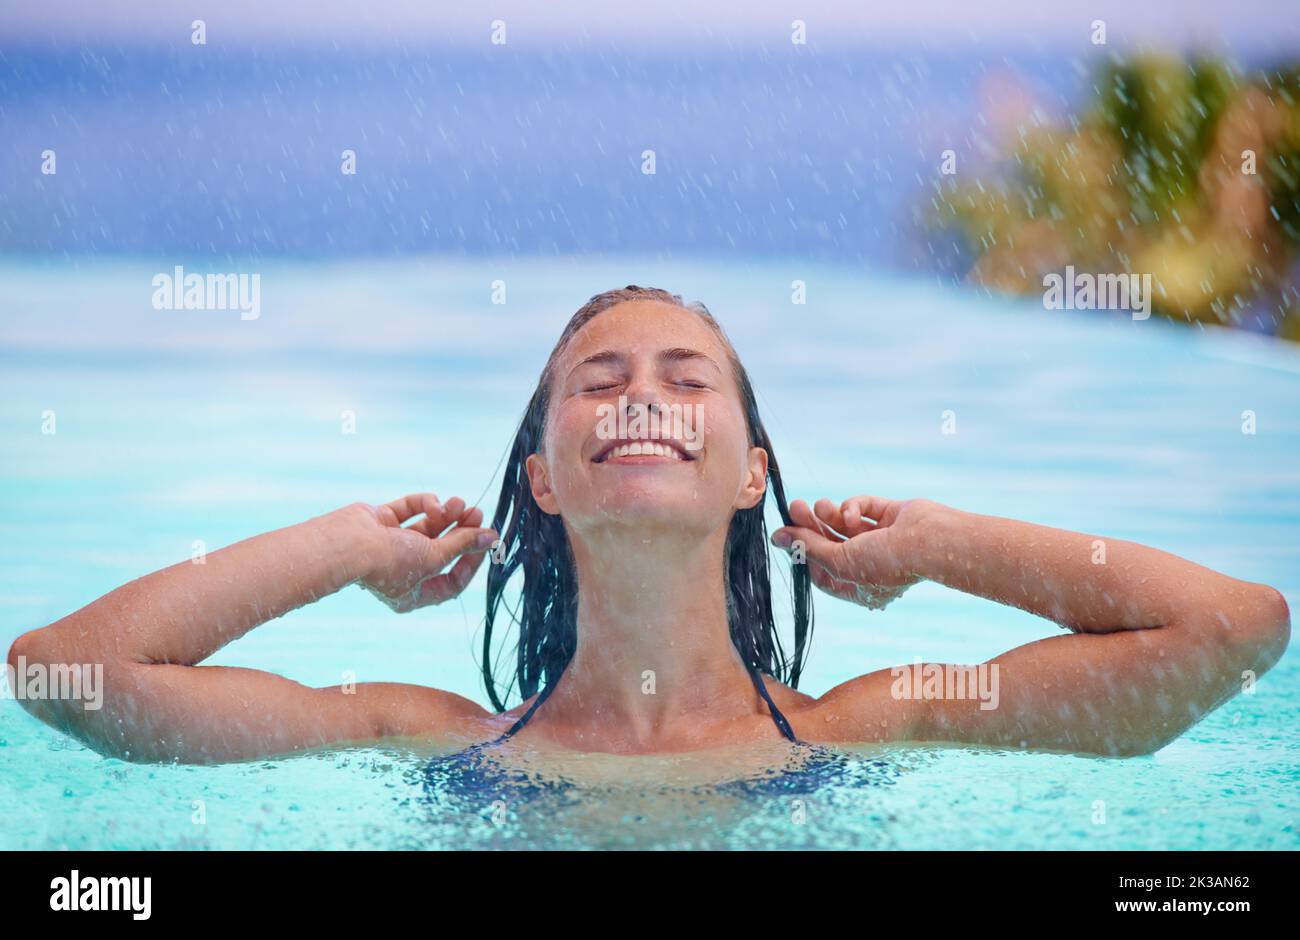 Raffreddamento dopo una giornata calda. Una bella giovane donna che si gode una nuotata. Foto Stock